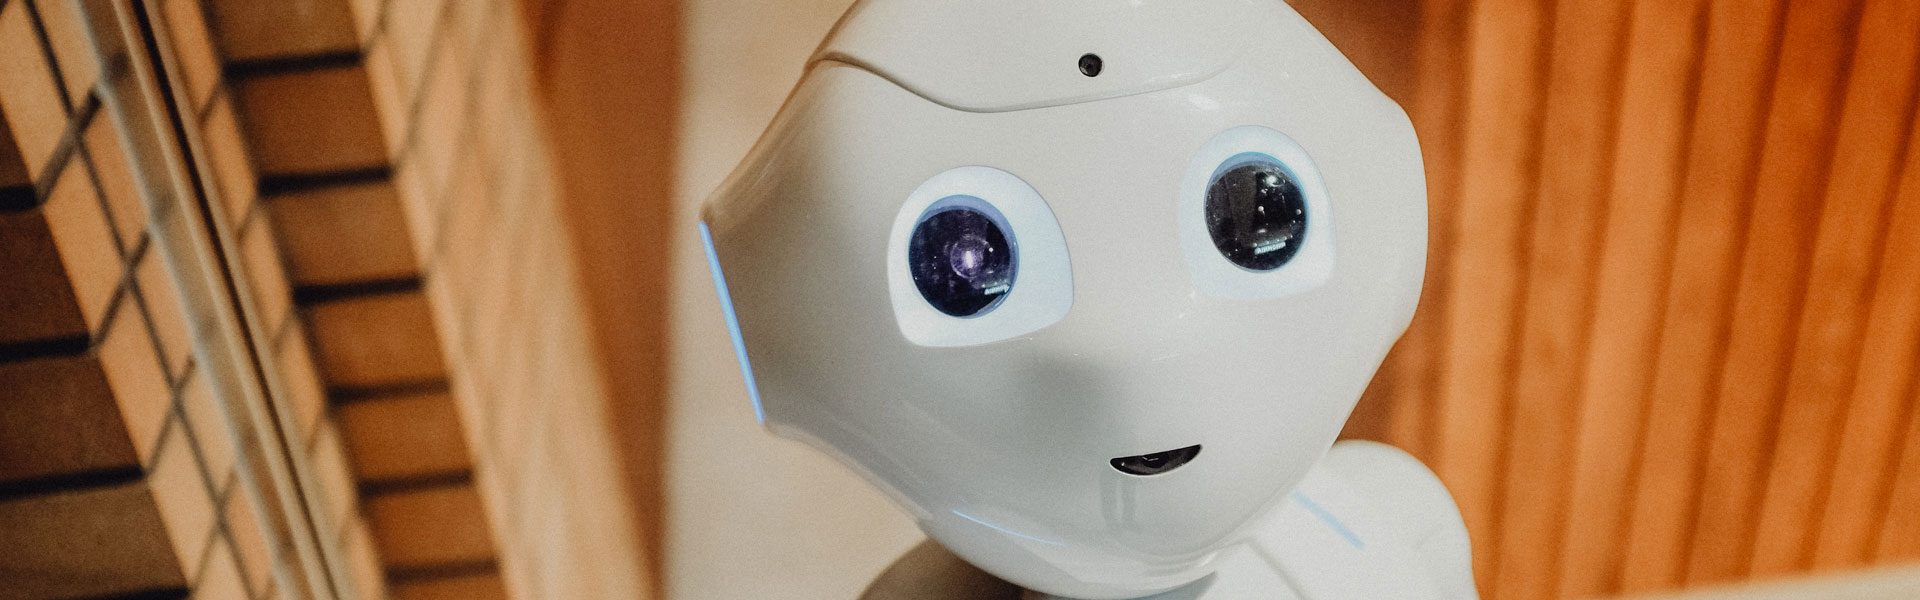 SichtWeisen | Roboter in der Alterspflege | Foto von Alex Knight von Pexels